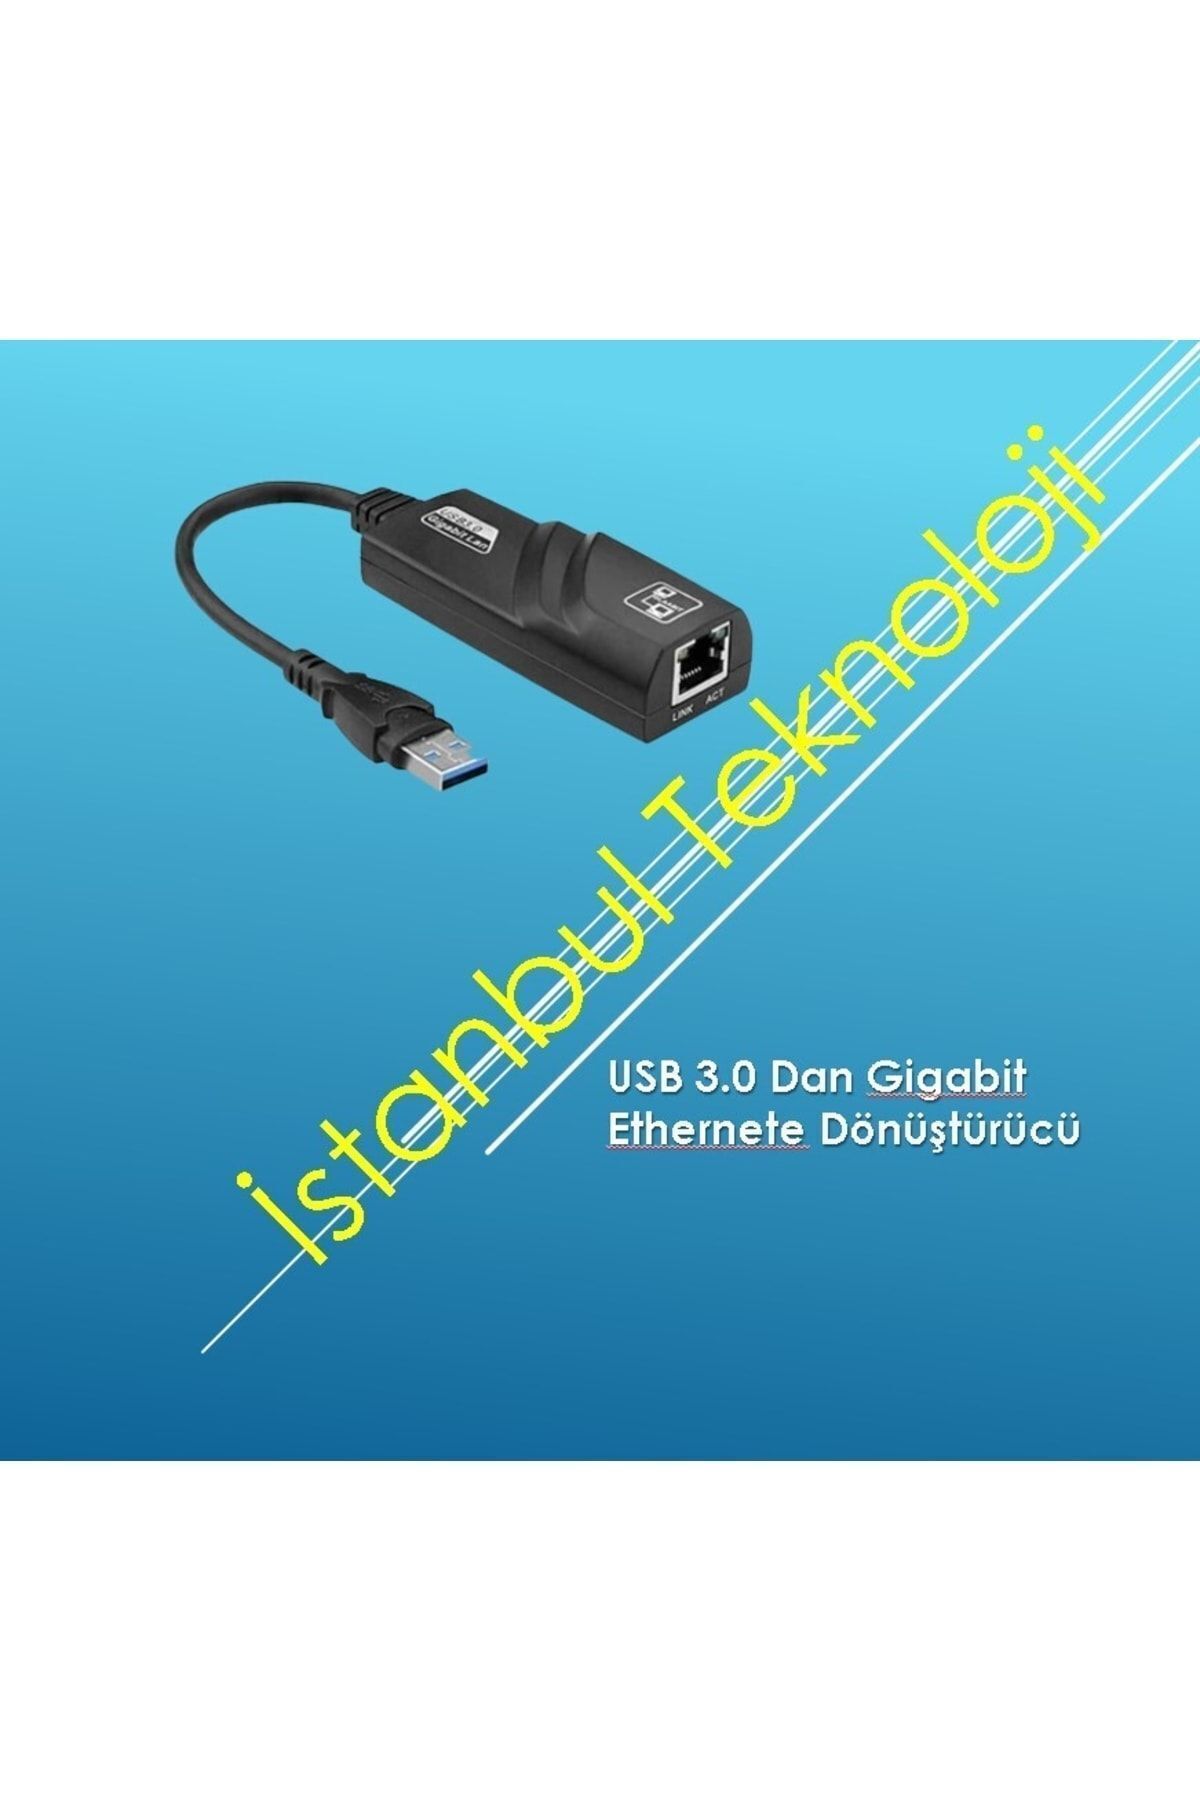 İstanbul Teknoloji Usb 3.0 Gigabit Ethernet Kartı Rj45 Adapter